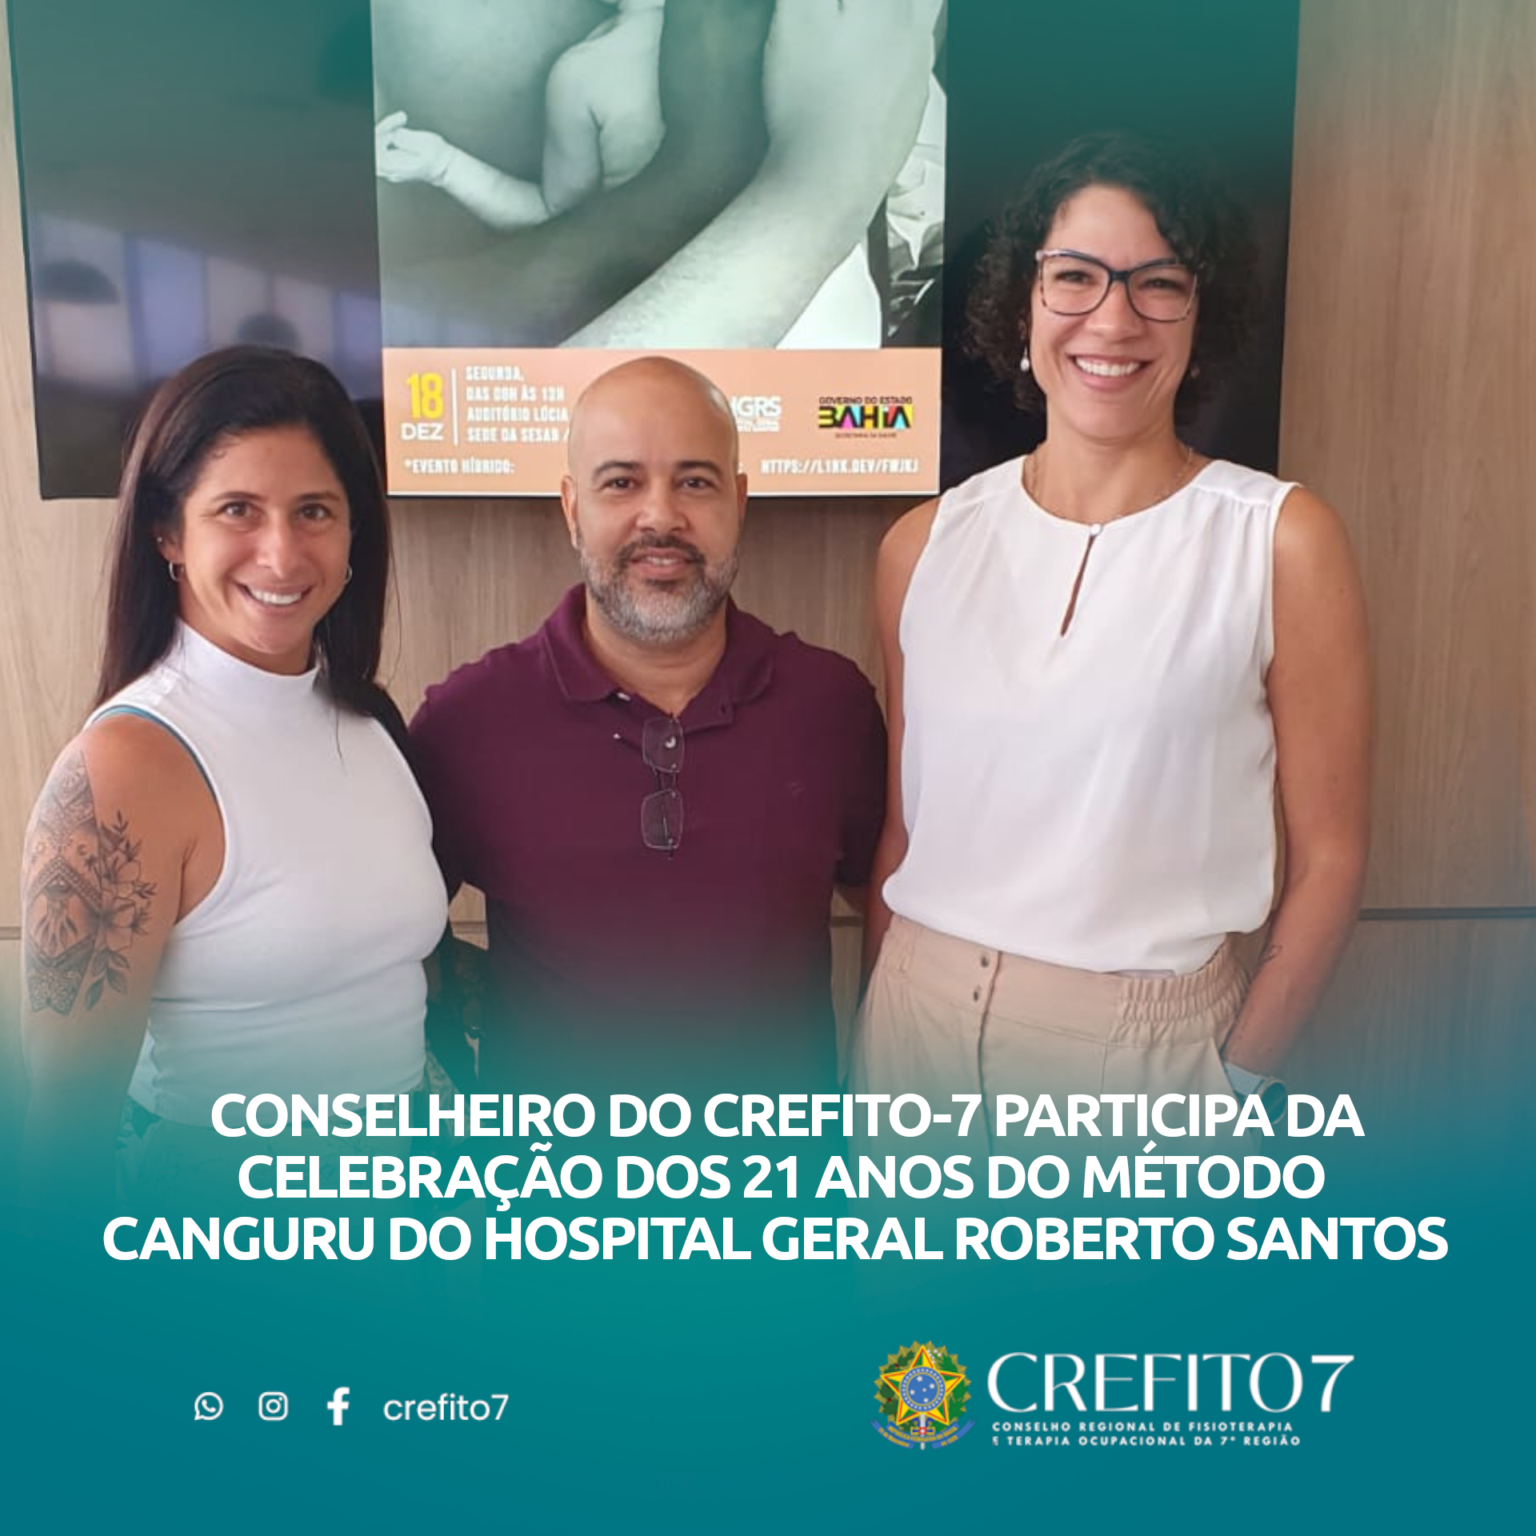 CONSELHEIRO DO CREFITO-7 PARTICIPA DA CELEBRAÇÃO DOS 21 ANOS DO MÉTODO CANGURU DO HOSPITAL GERAL ROBERTO SANTOS